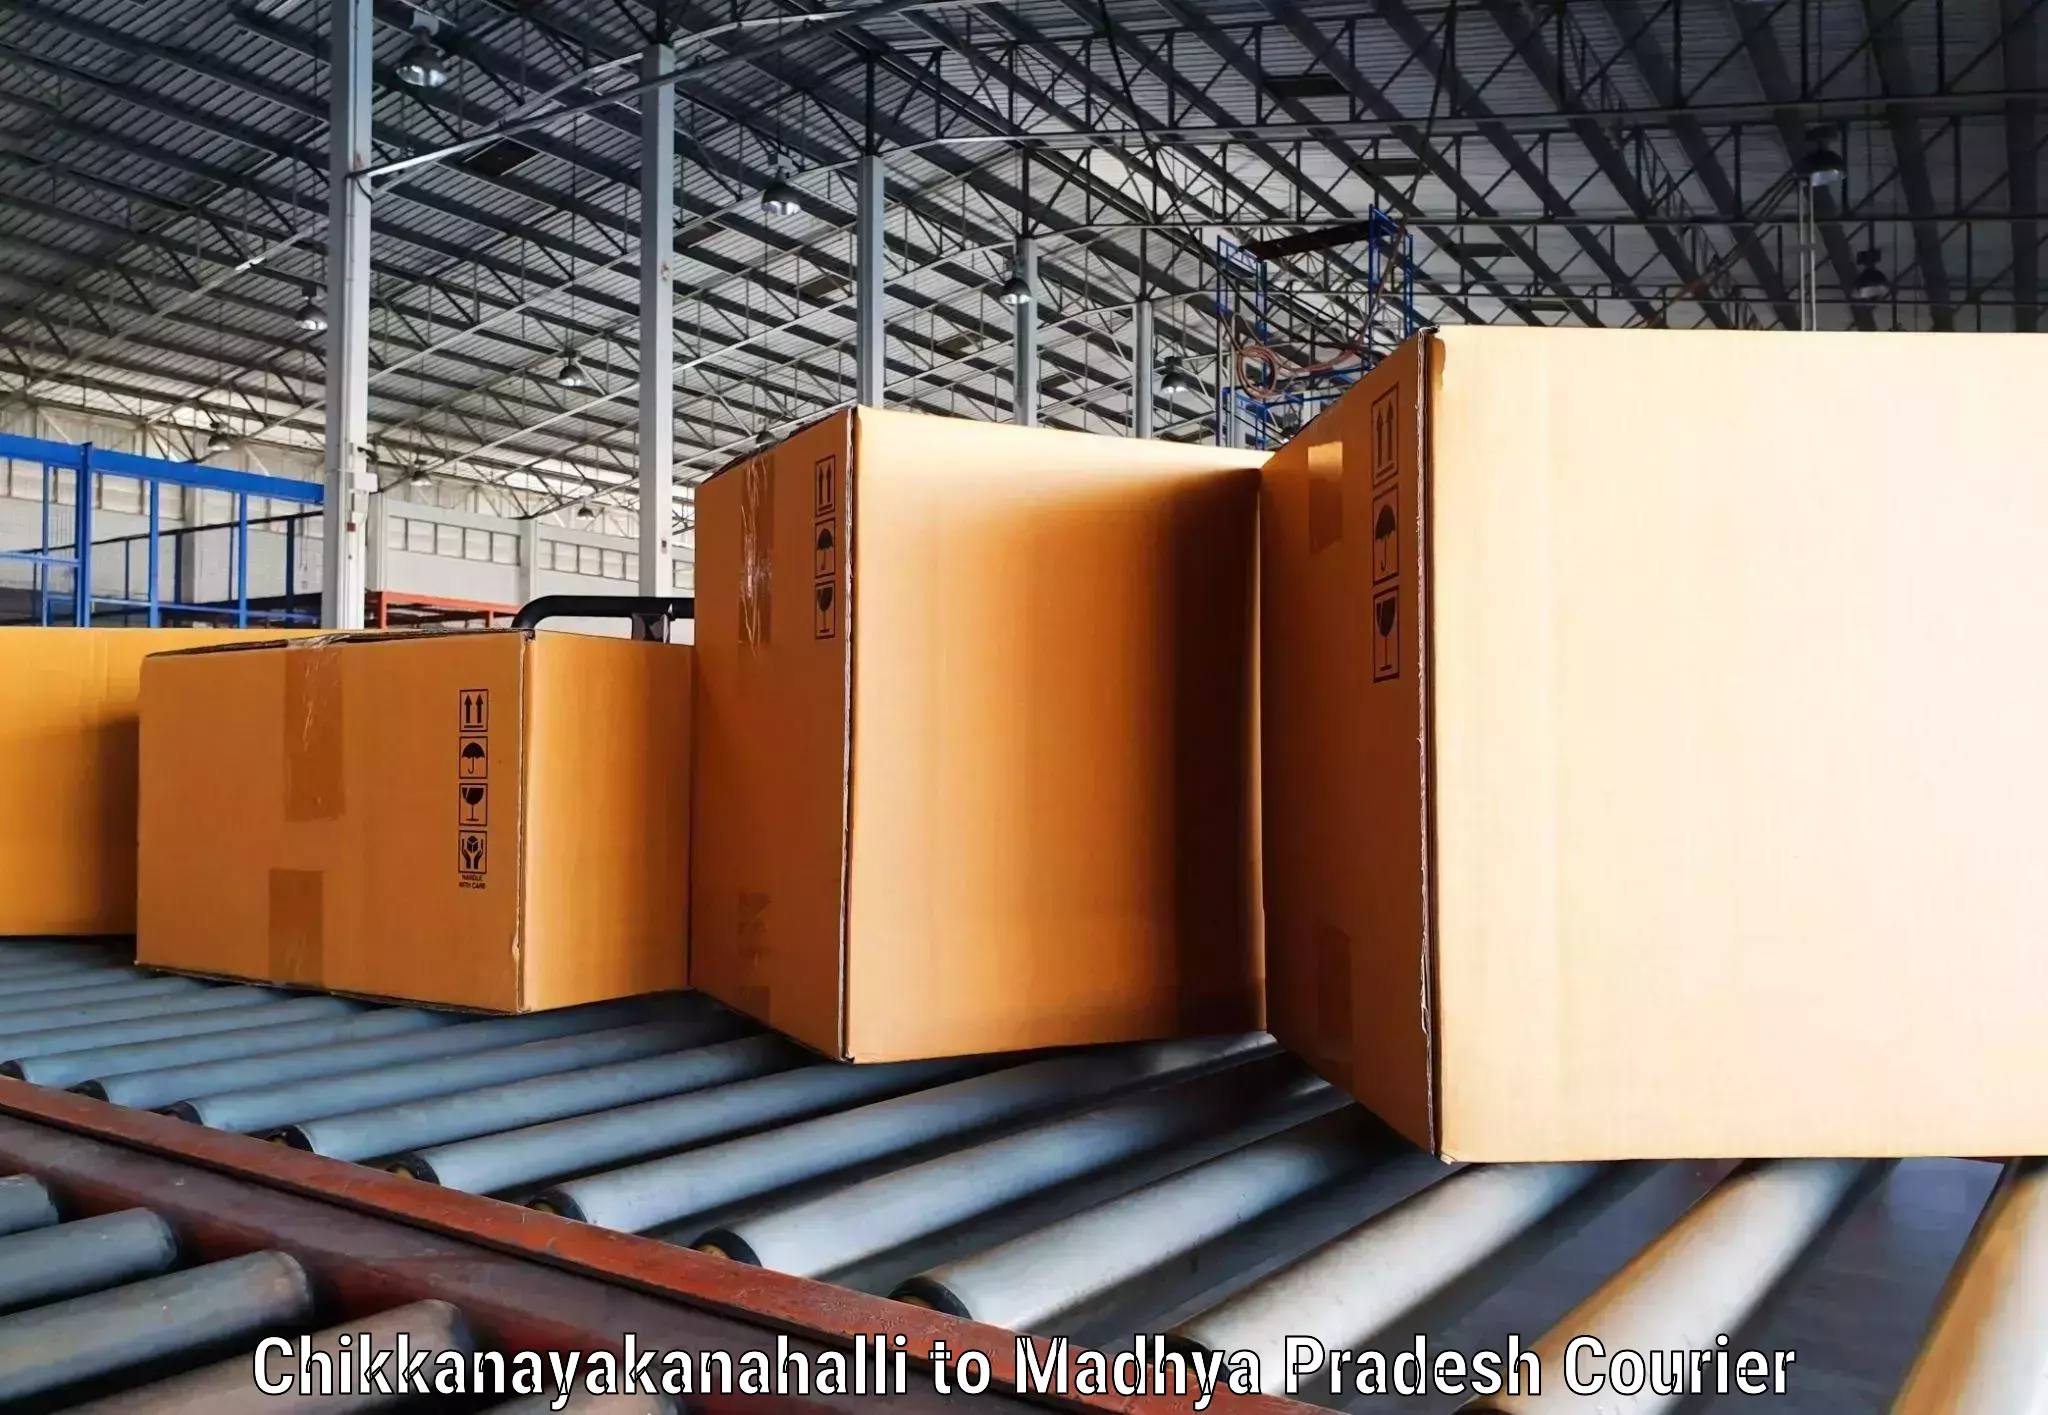 Sustainable shipping practices Chikkanayakanahalli to Vijayraghavgarh